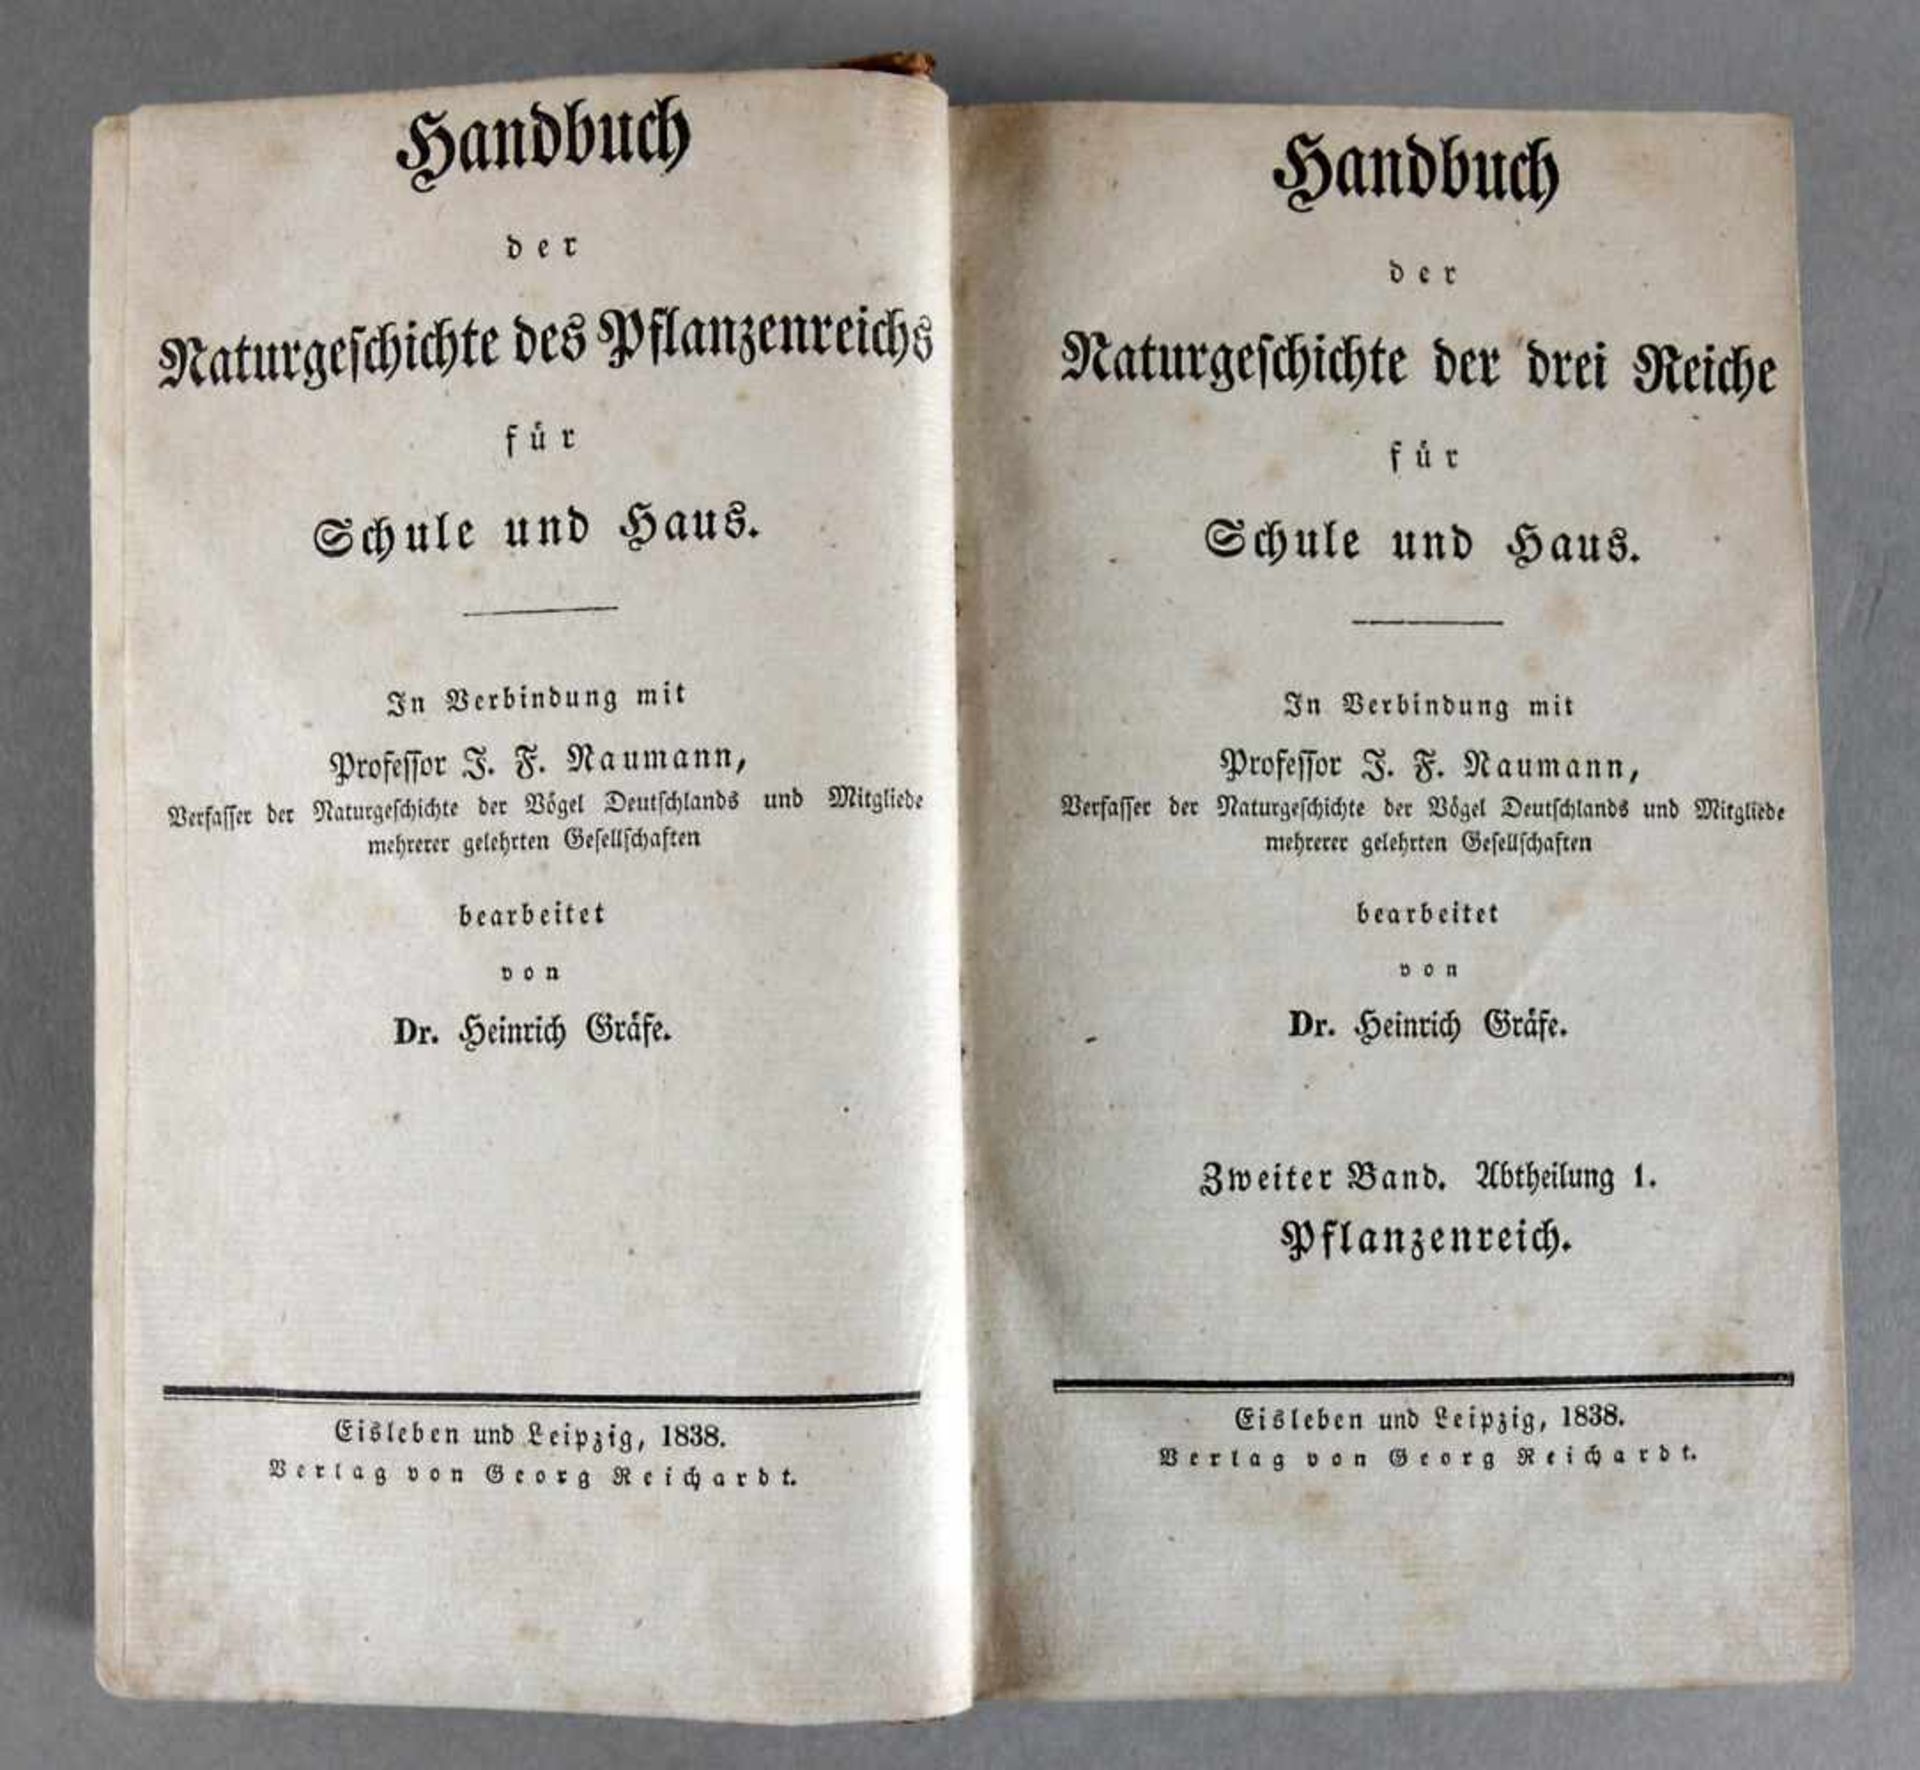 "Handbuch der Naturgeschichte der drei Reiche für Schule und Haus" von Heinrich Gräfe, 2. Band,